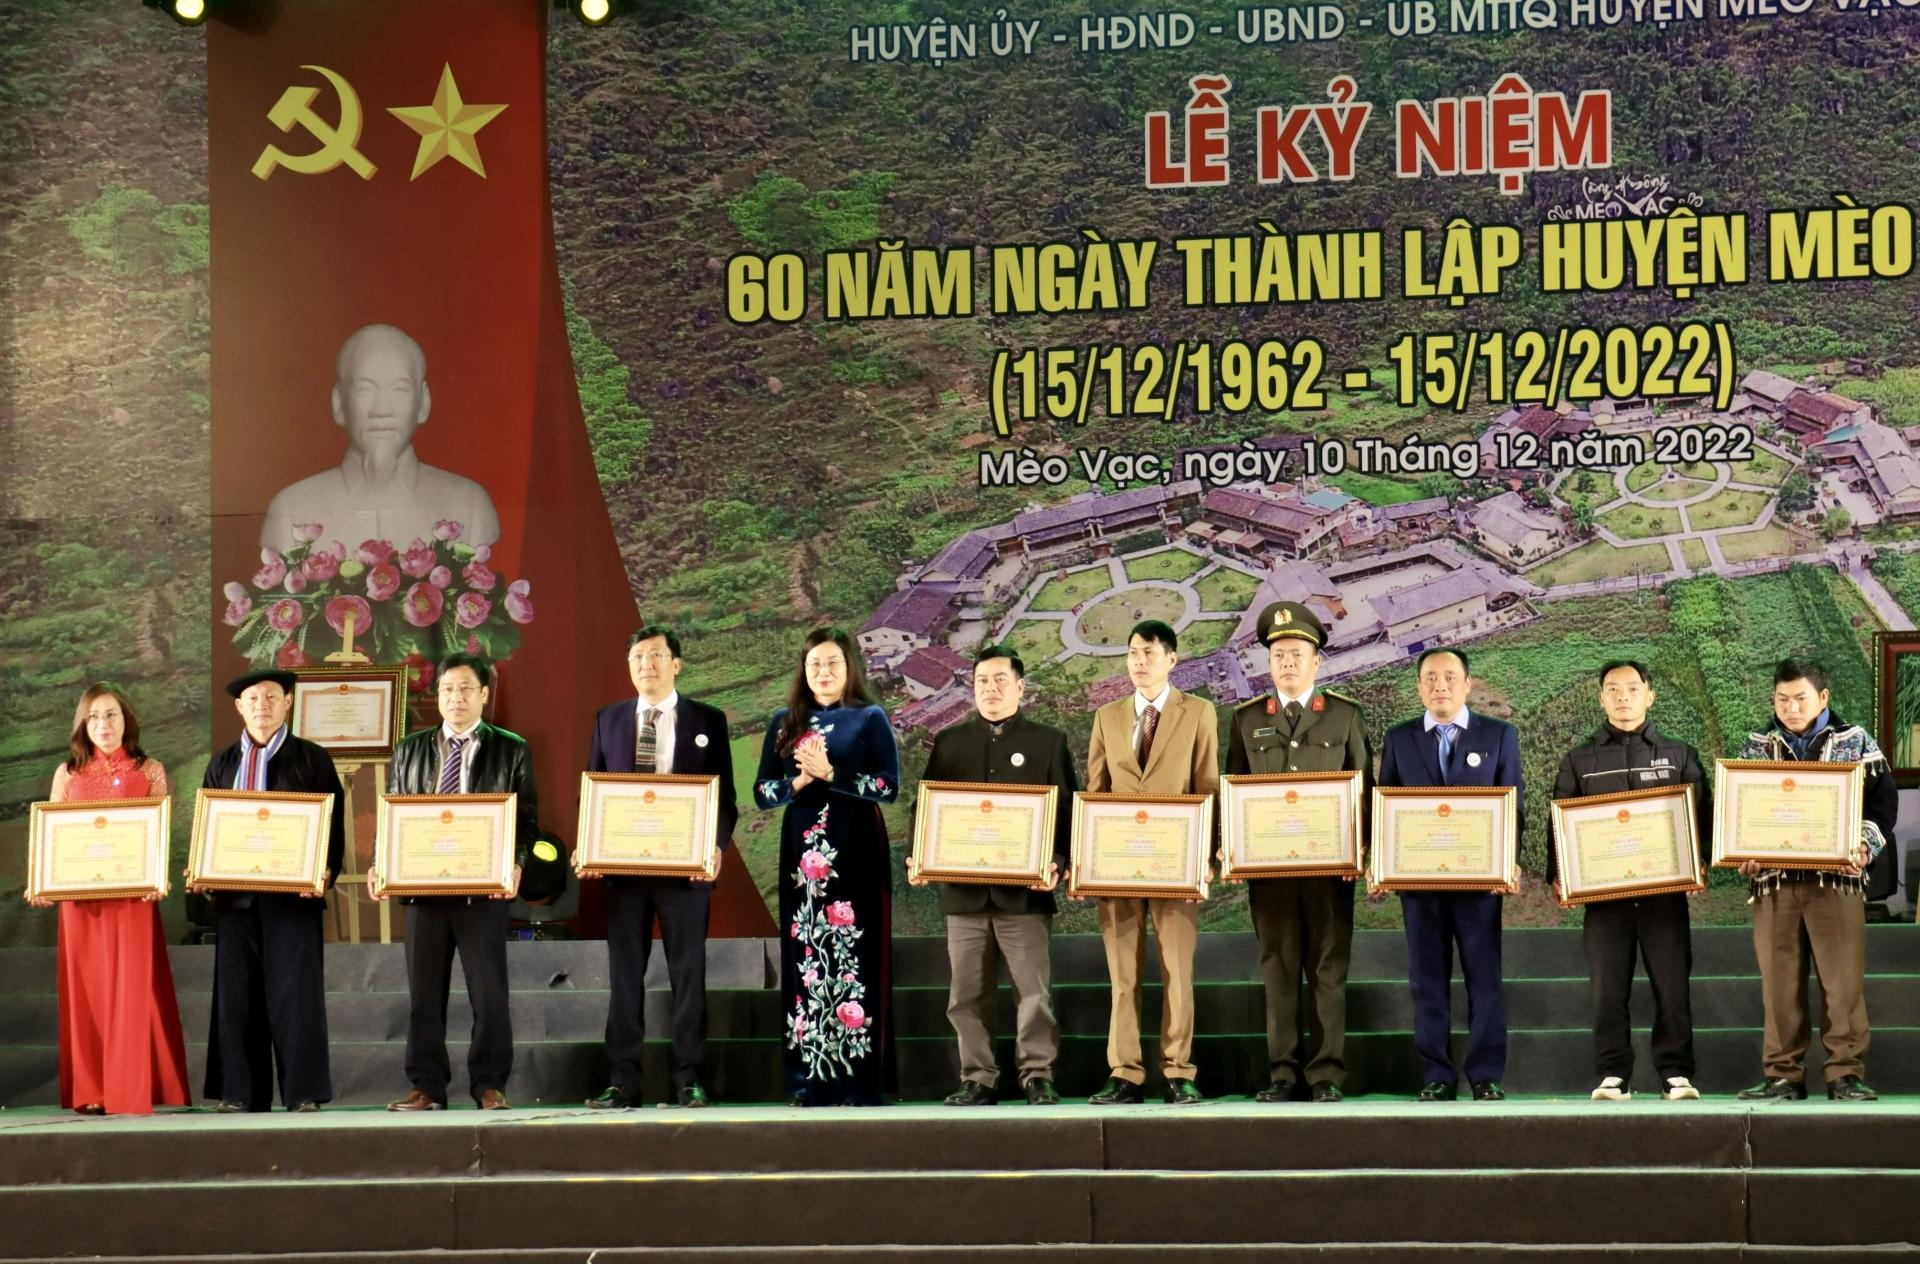 Phó Chủ tịch UBND tỉnh Hà Thị Minh Hạnh trao Bằng khen của Chủ tịch UBND tỉnh cho các cá nhân có thành tích xuất sắc trong thực hiện phong trào thi đua chào mừng kỷ niệm 60 năm Ngày thành lập huyện.